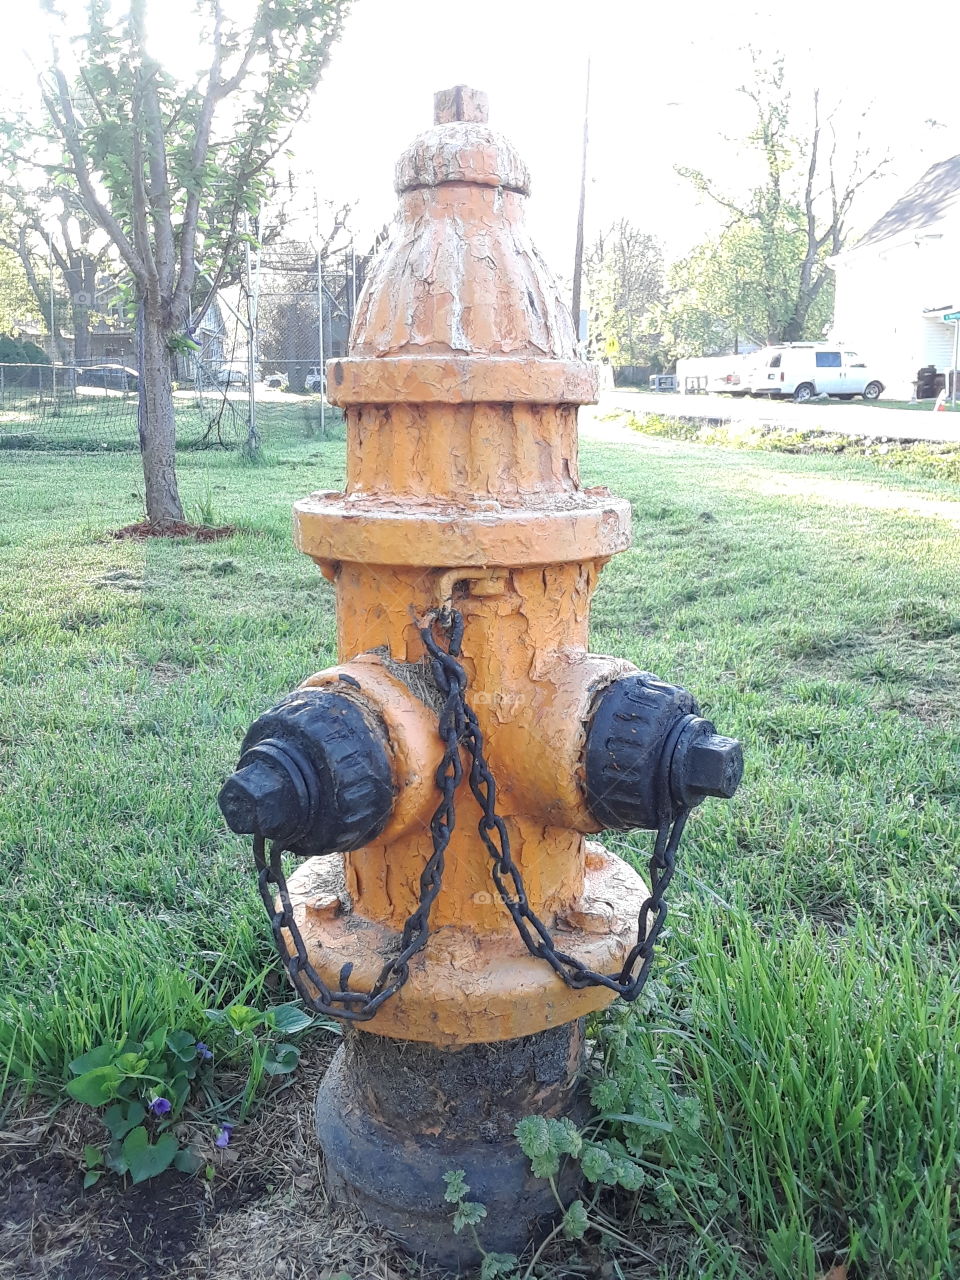 Orange Fire Hydrant in a yard